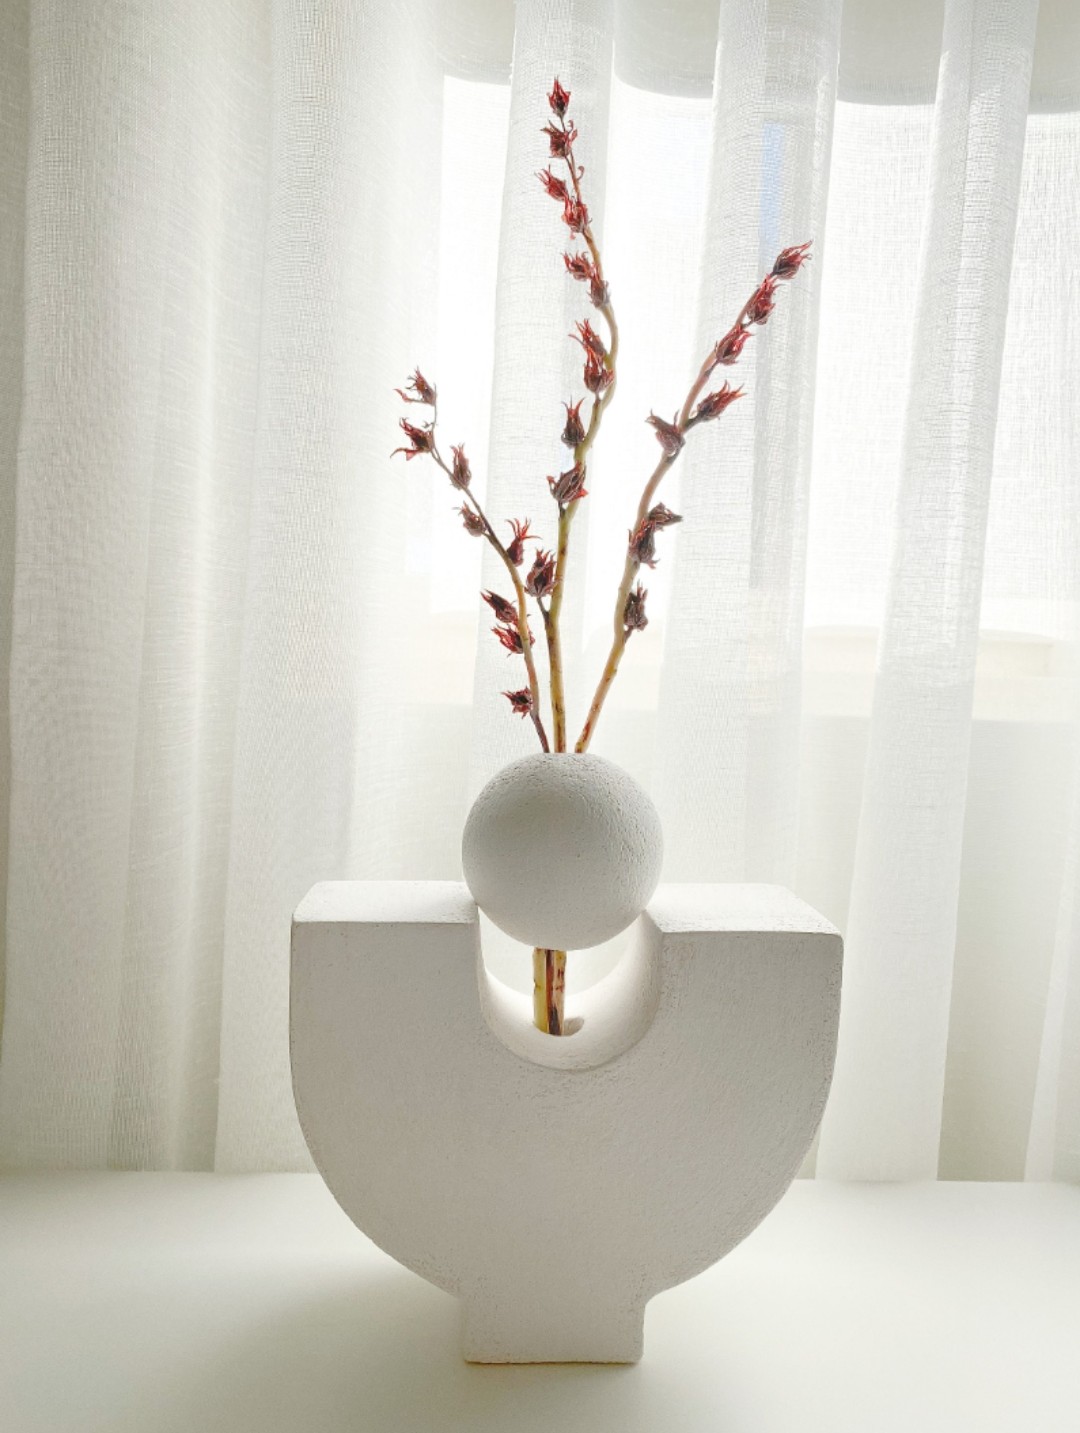 Floating sphere vase from Ivanaloves